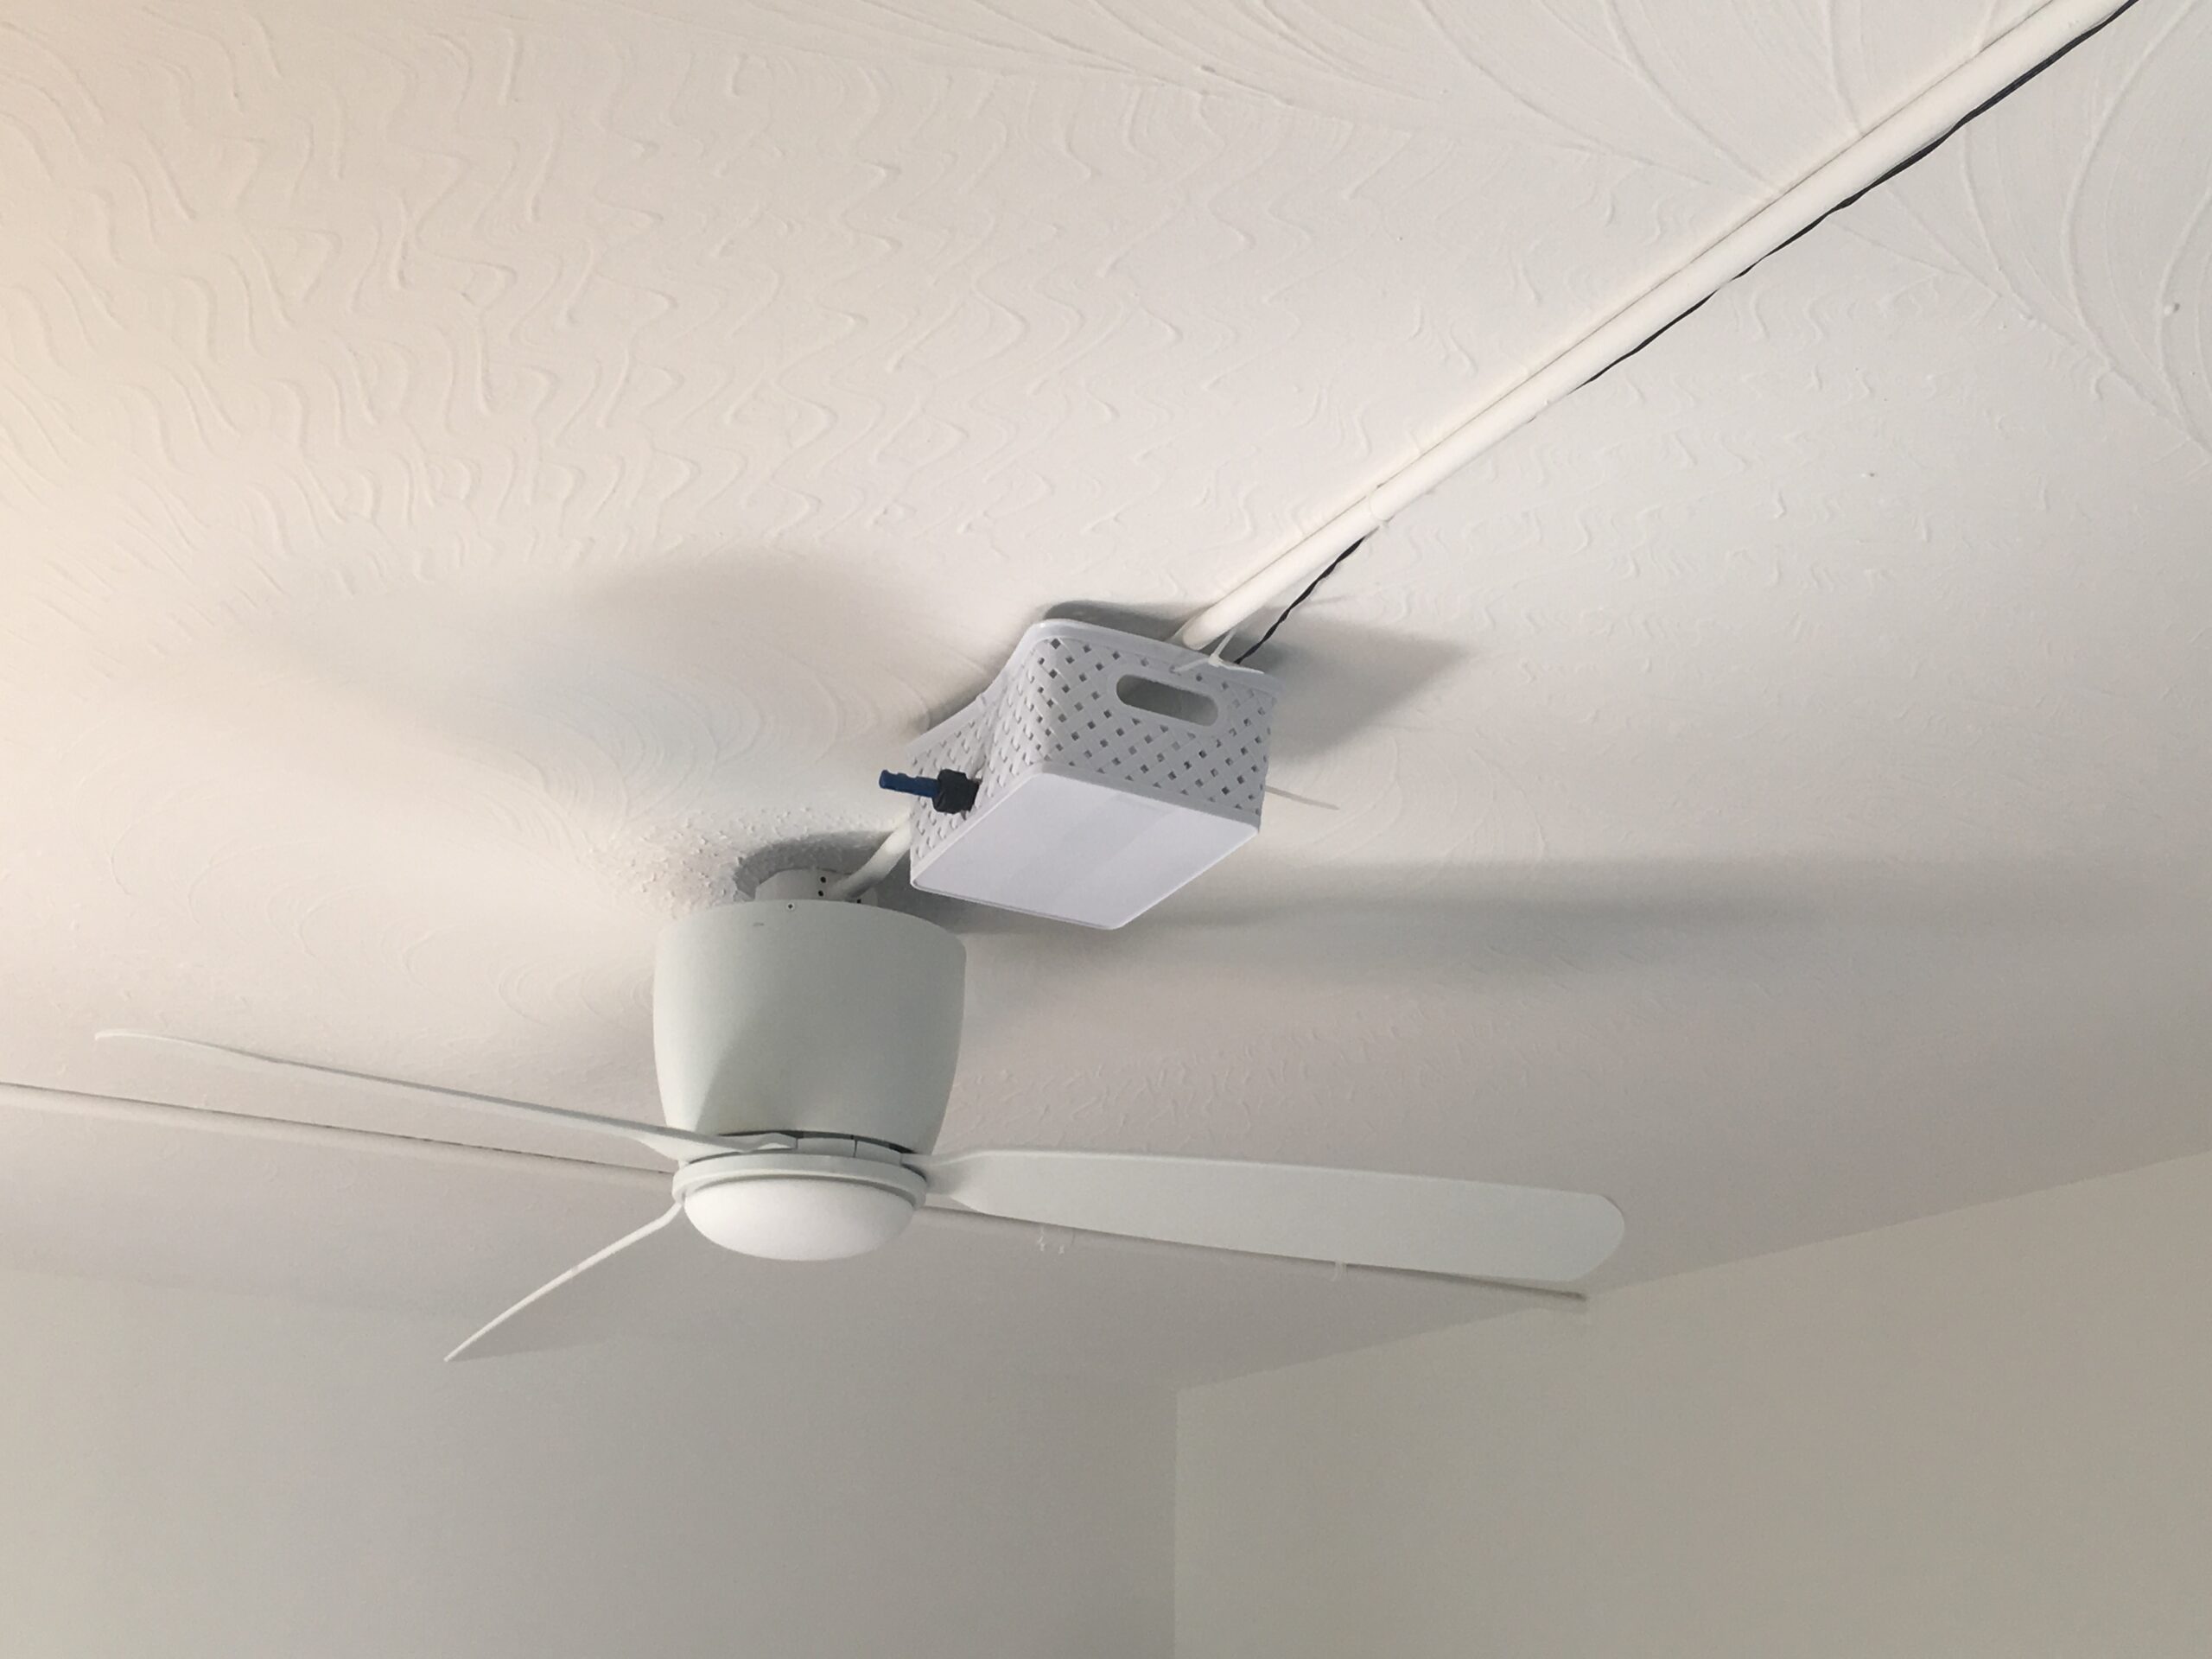 Ceiling fan monitoring